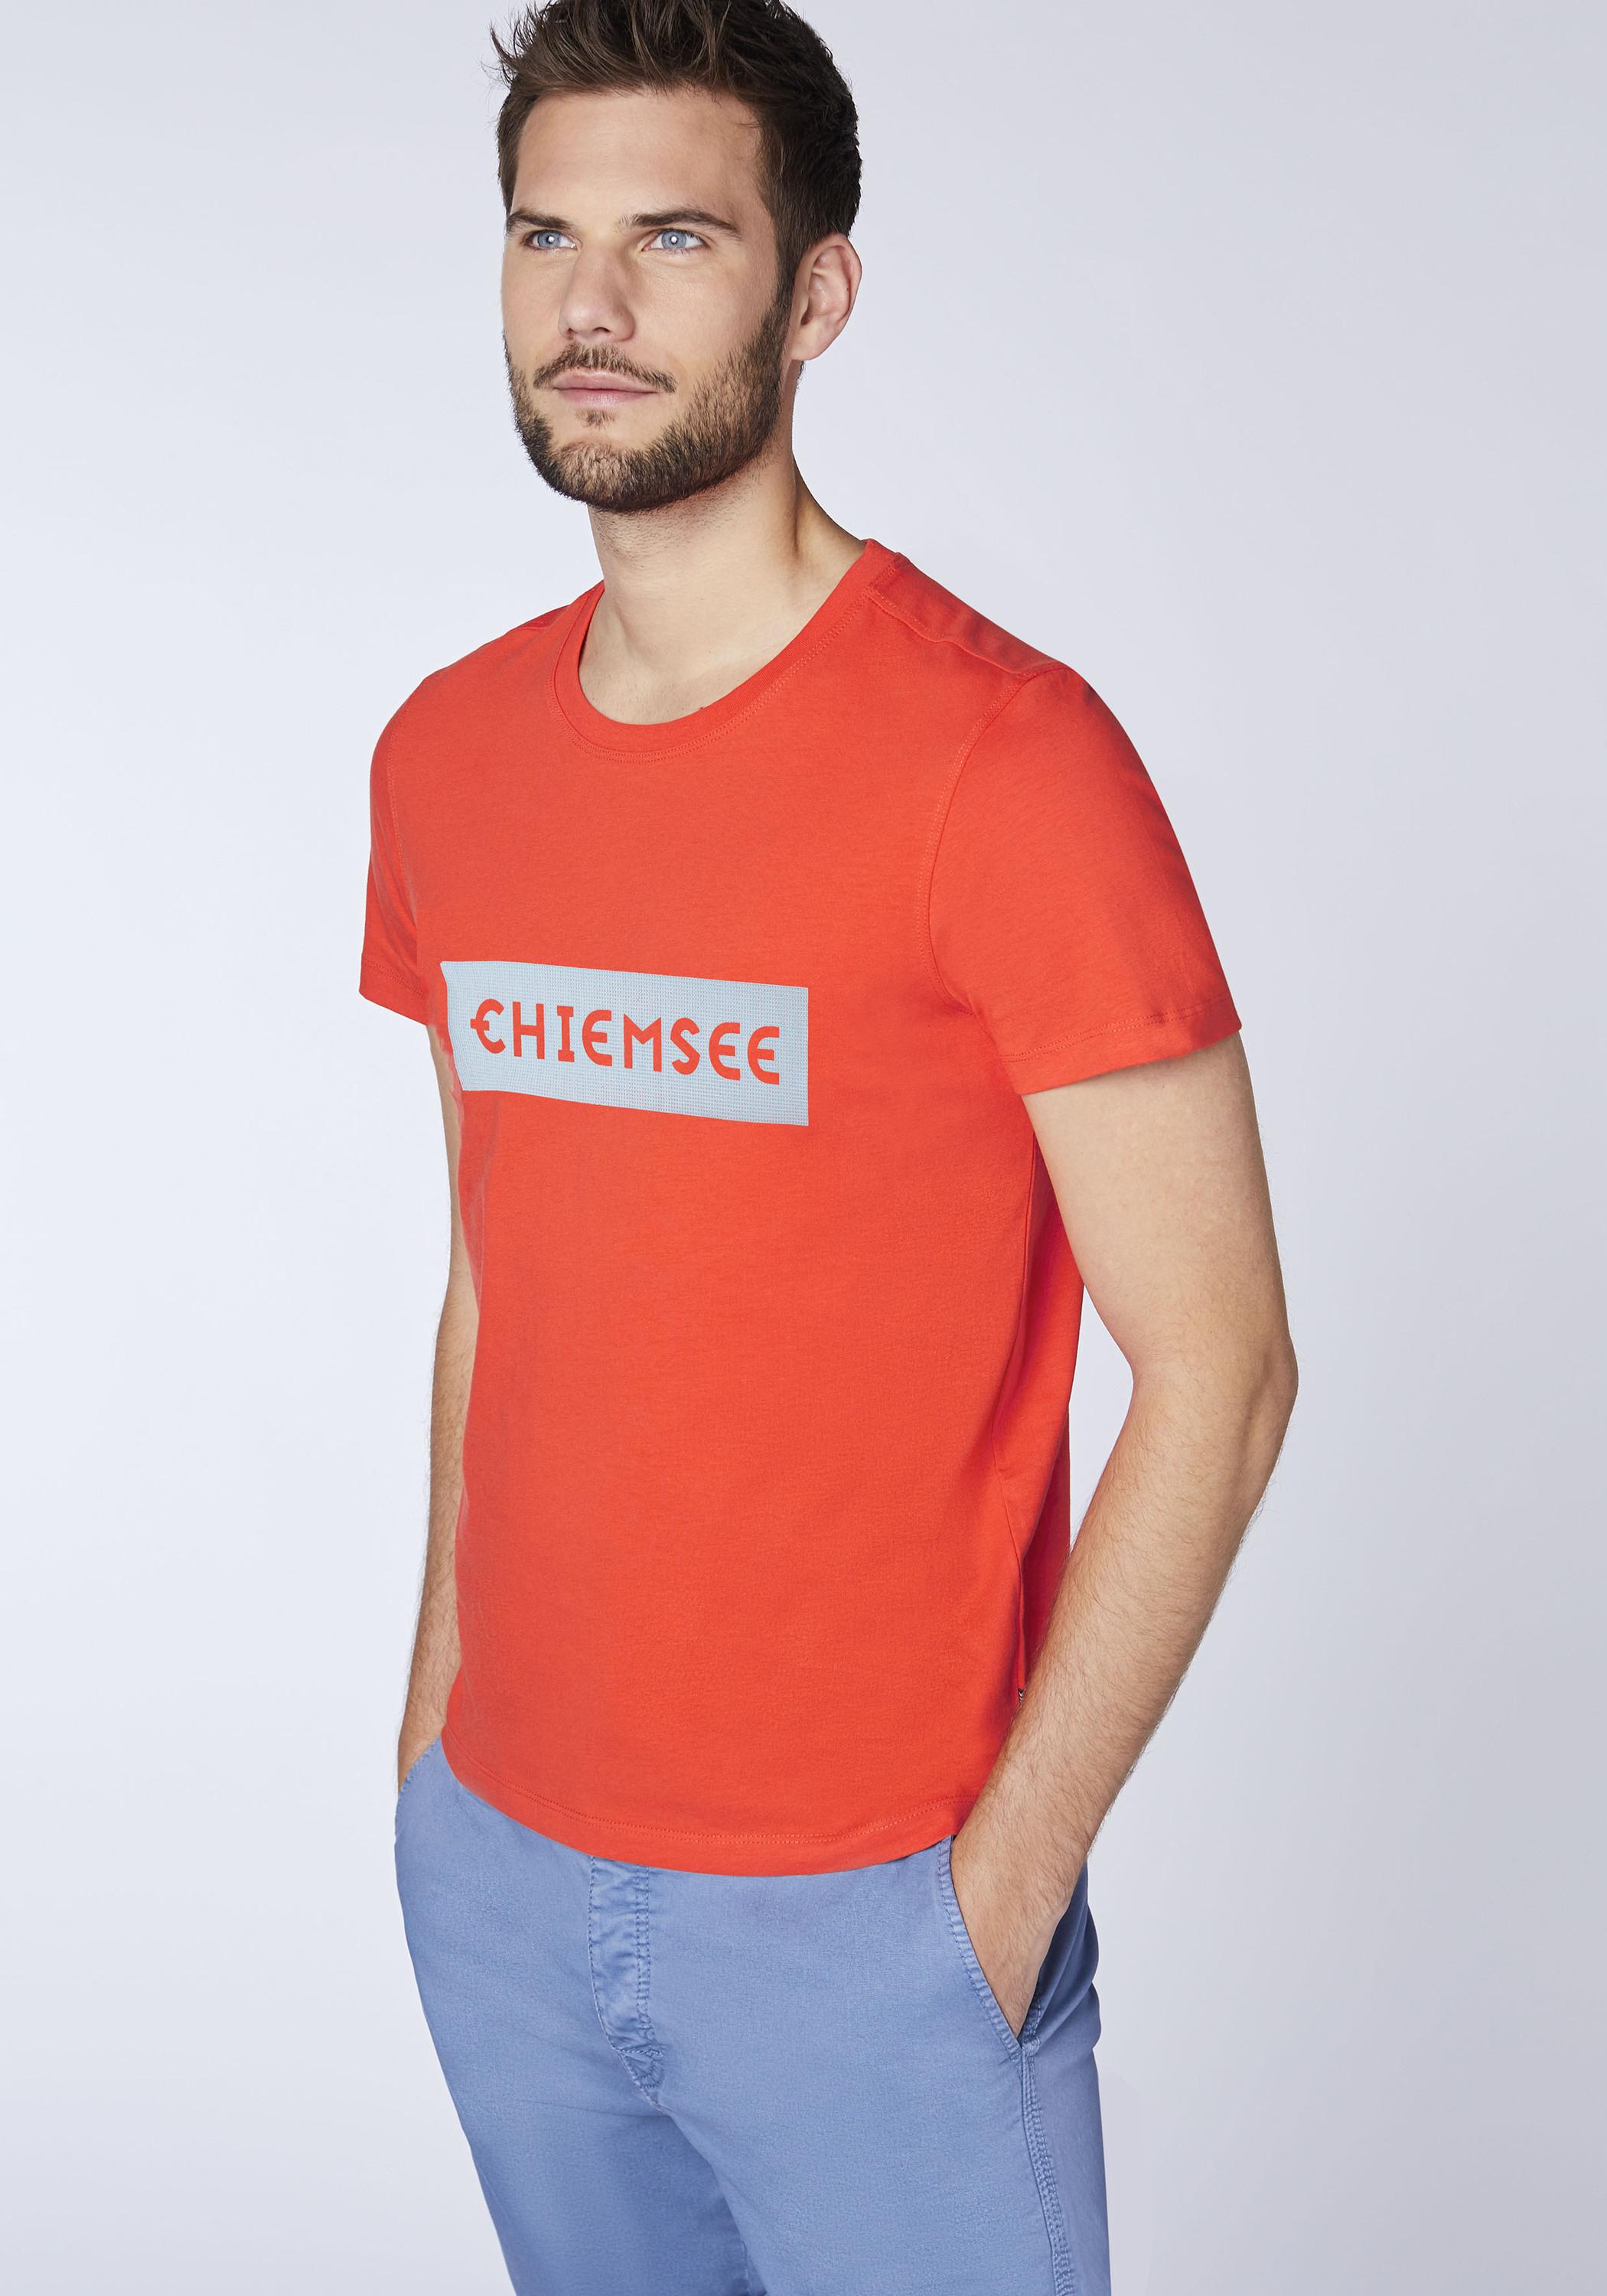 Chiemsee Online von Chery Herren kaufen T-Shirt T-Shirt Tomato Shop im SportScheck